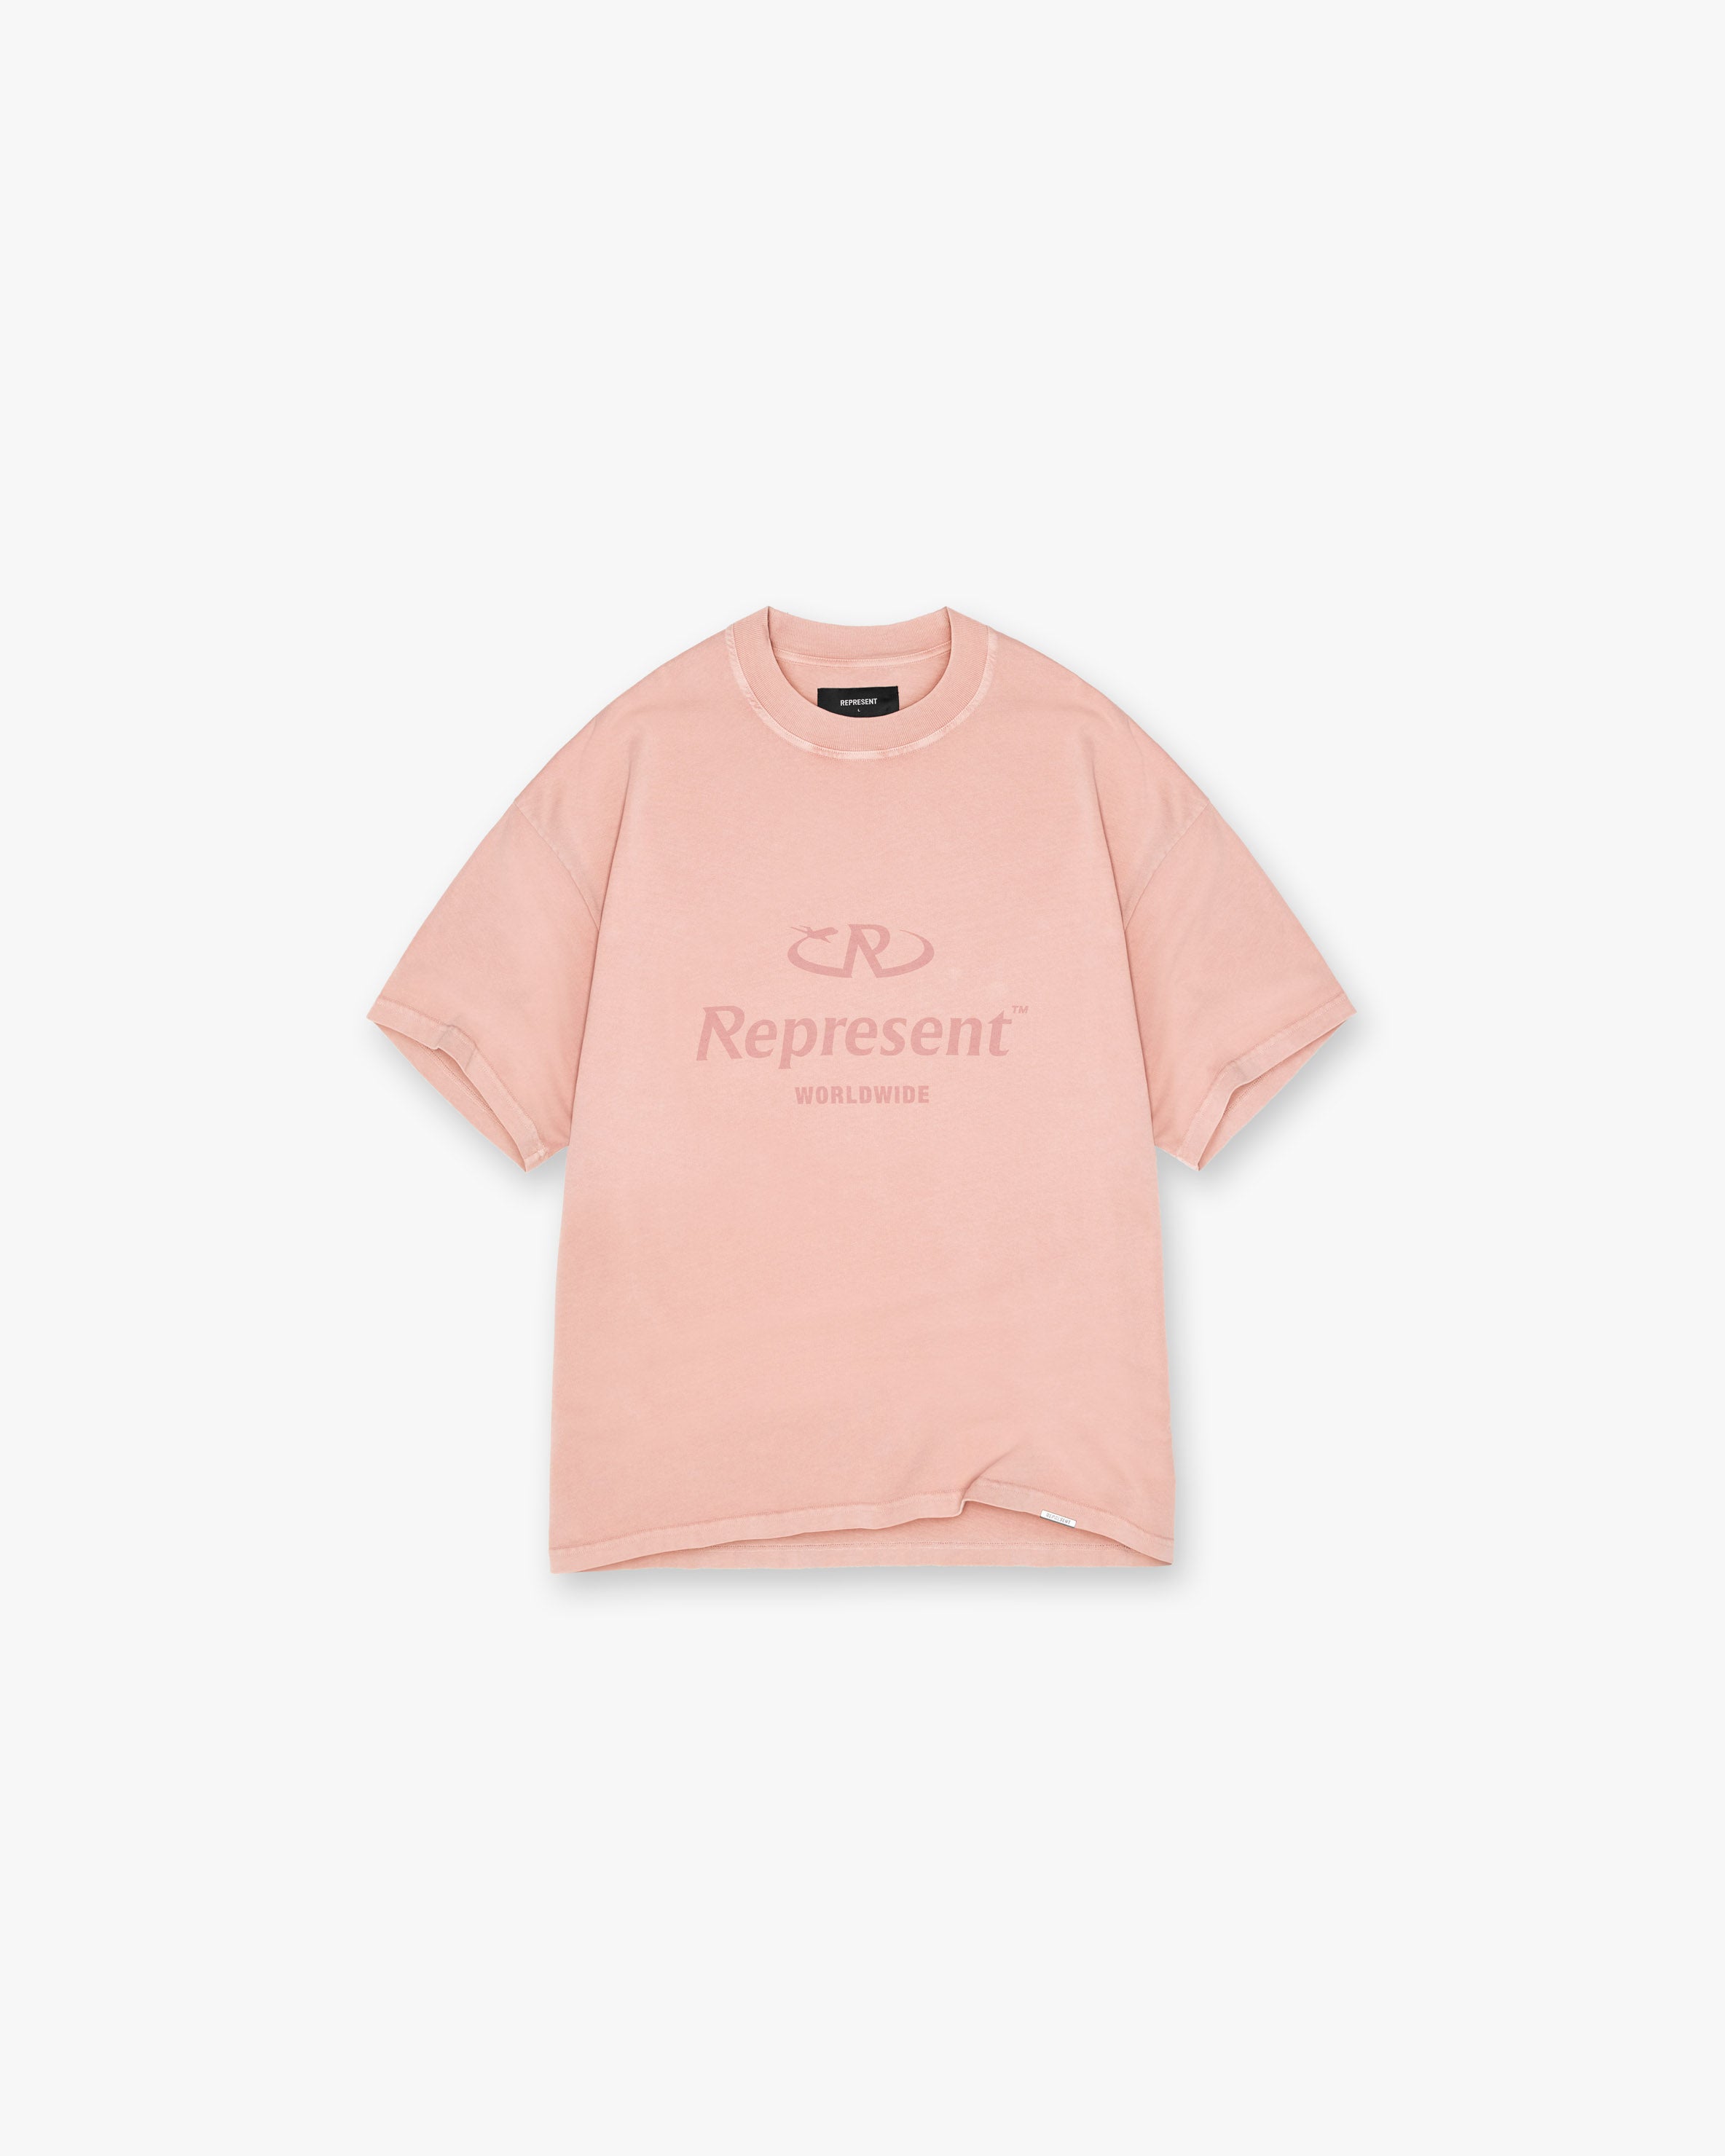 T-Shirt REPRESENT | Pink CLO Worldwide |